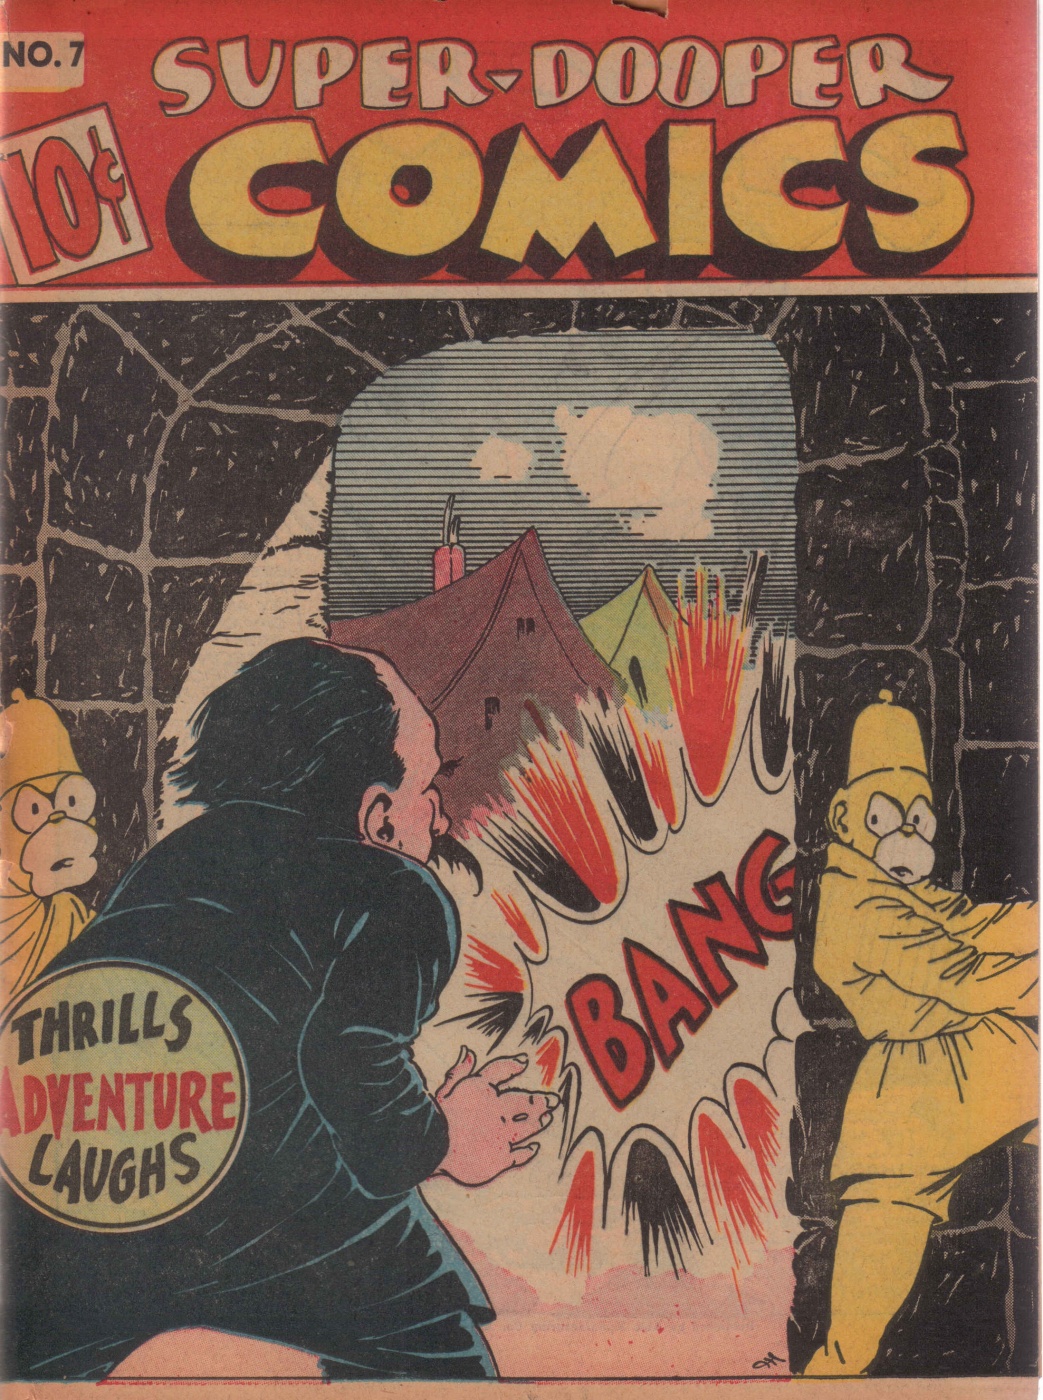 Funny Comics: 'Super Dooper'